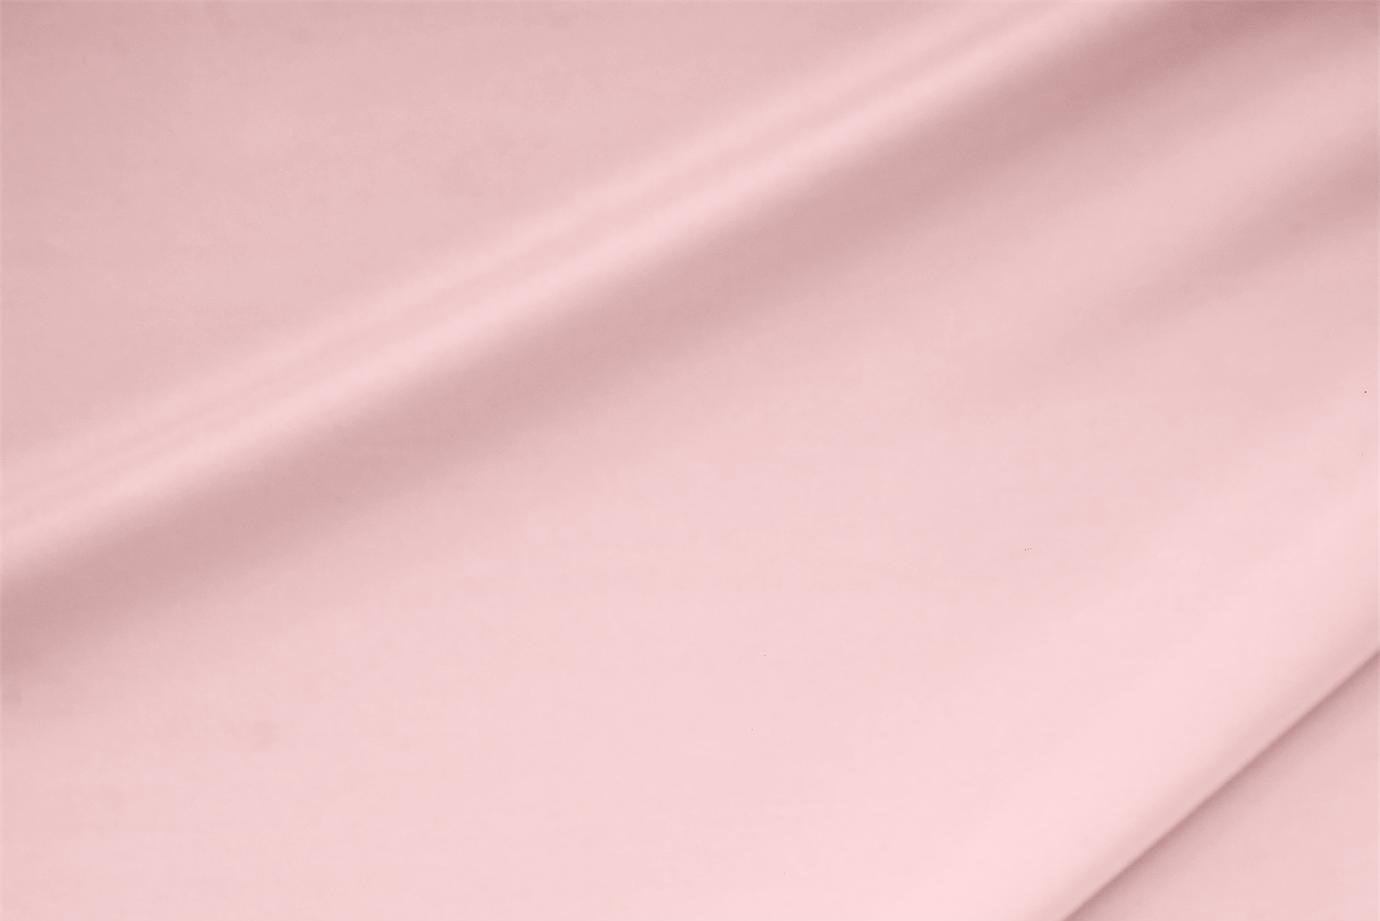 Tessuto Crêpe de Chine Stretch Rosa Confetto in Seta, Stretch per Abbigliamento UN000670